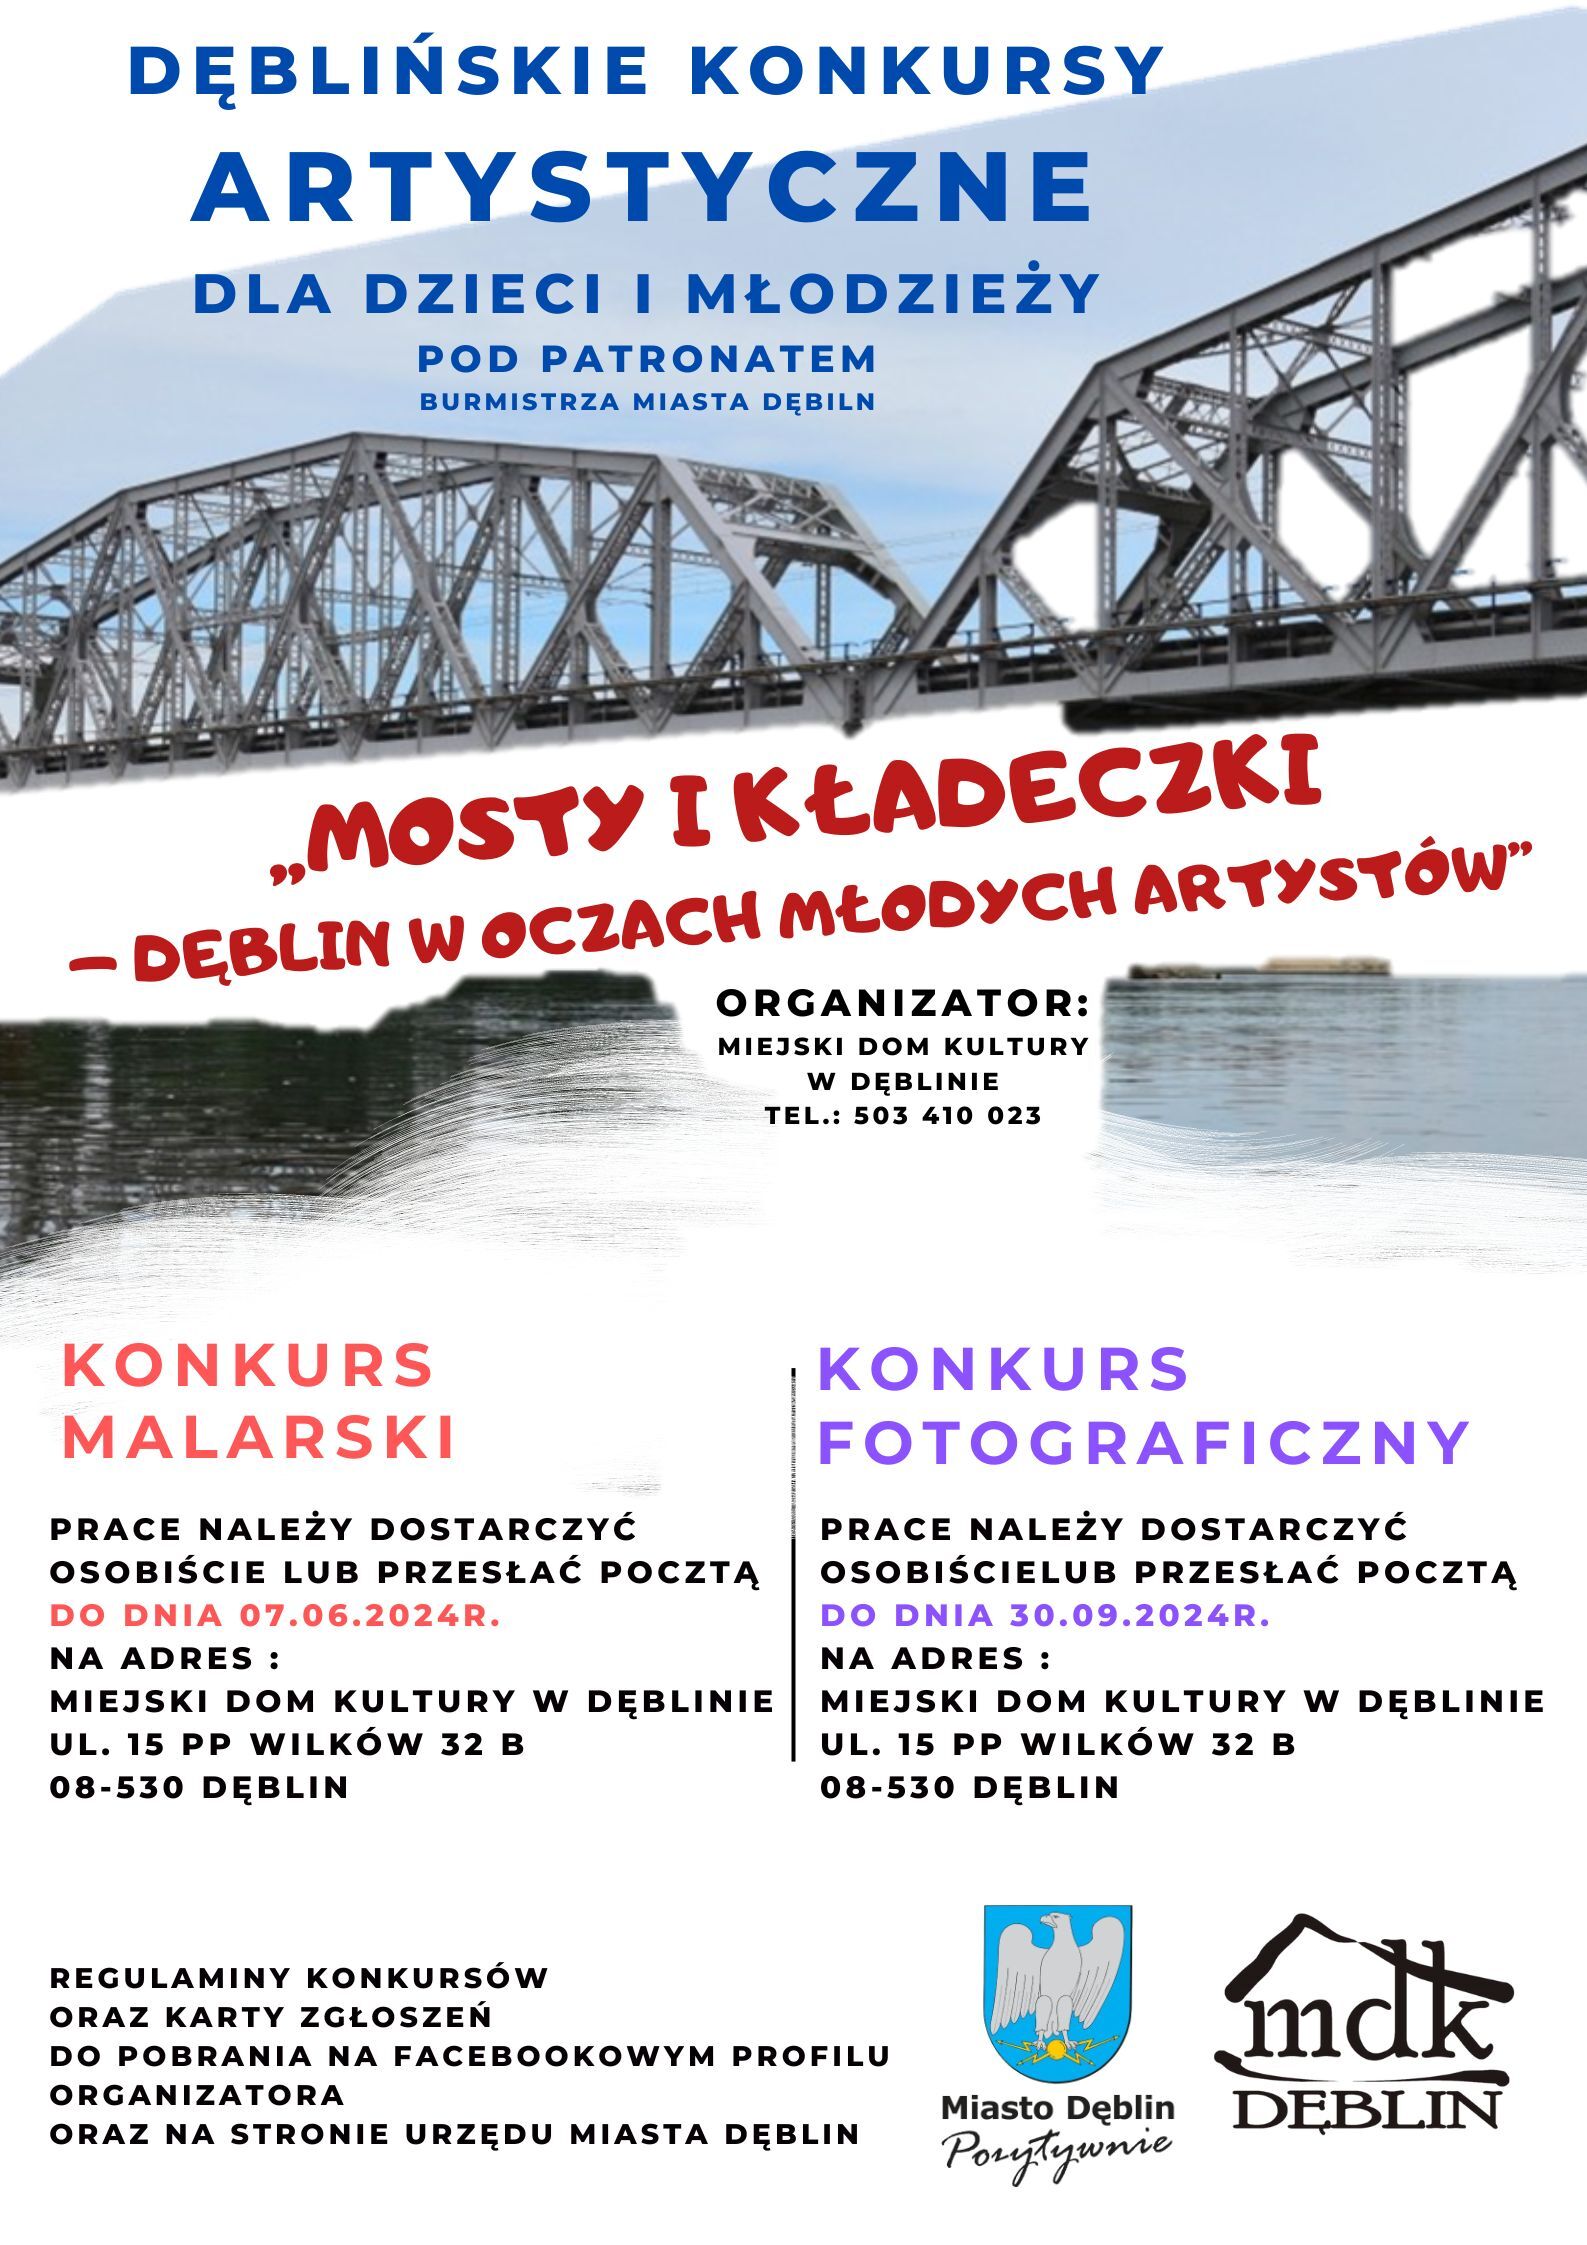 Plakat informacyjny promujący konkursy dla młodych artystów zorganizowane przez Młodzieżowy Dom Kultury w Dęblinie. Zawiera szczegóły dotyczące terminów i miejsc.